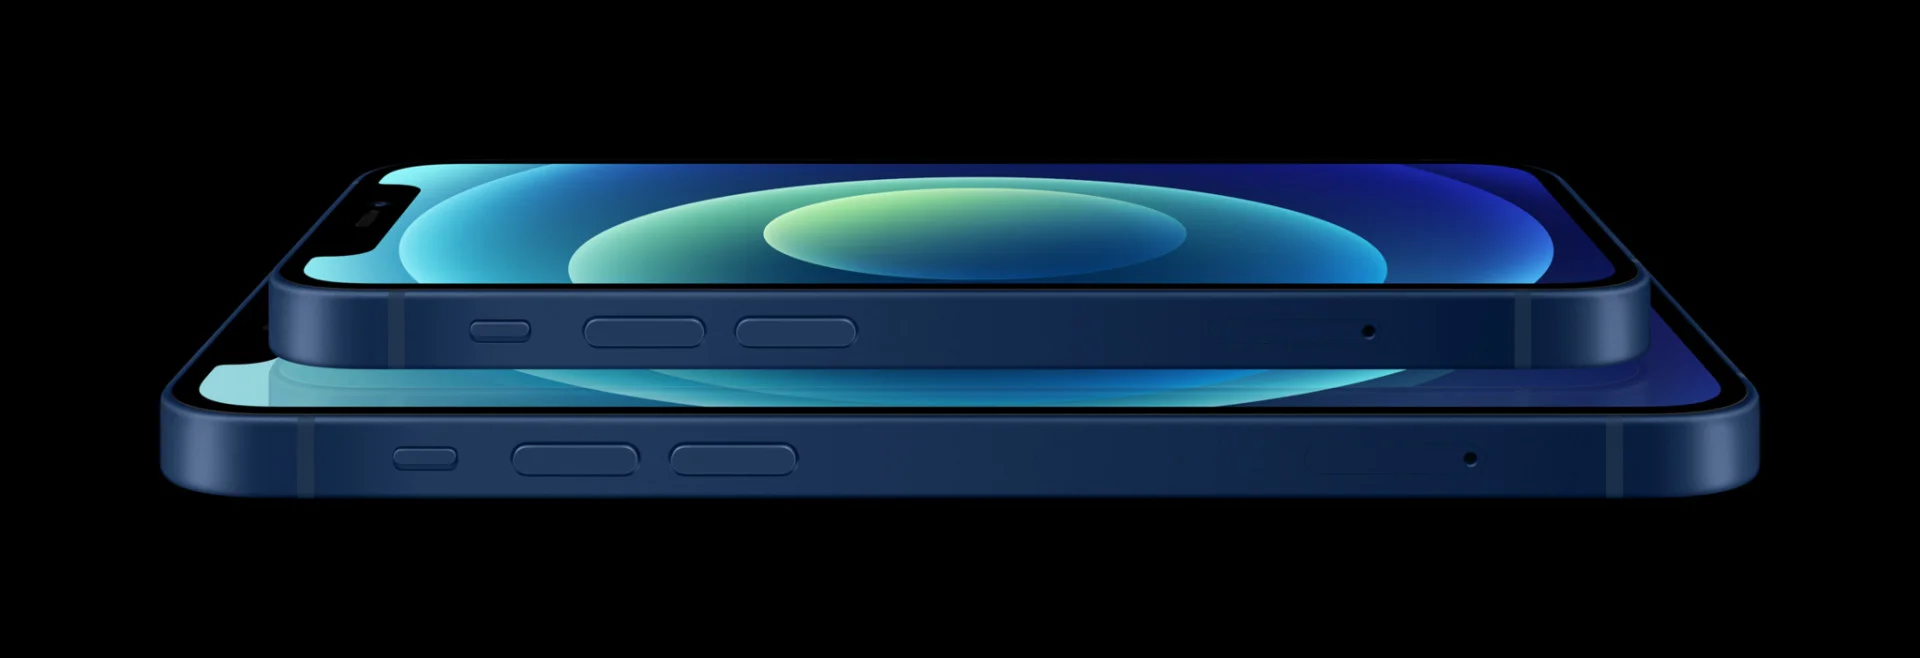 Apple показала четыре новых iPhone 12 - фото 2